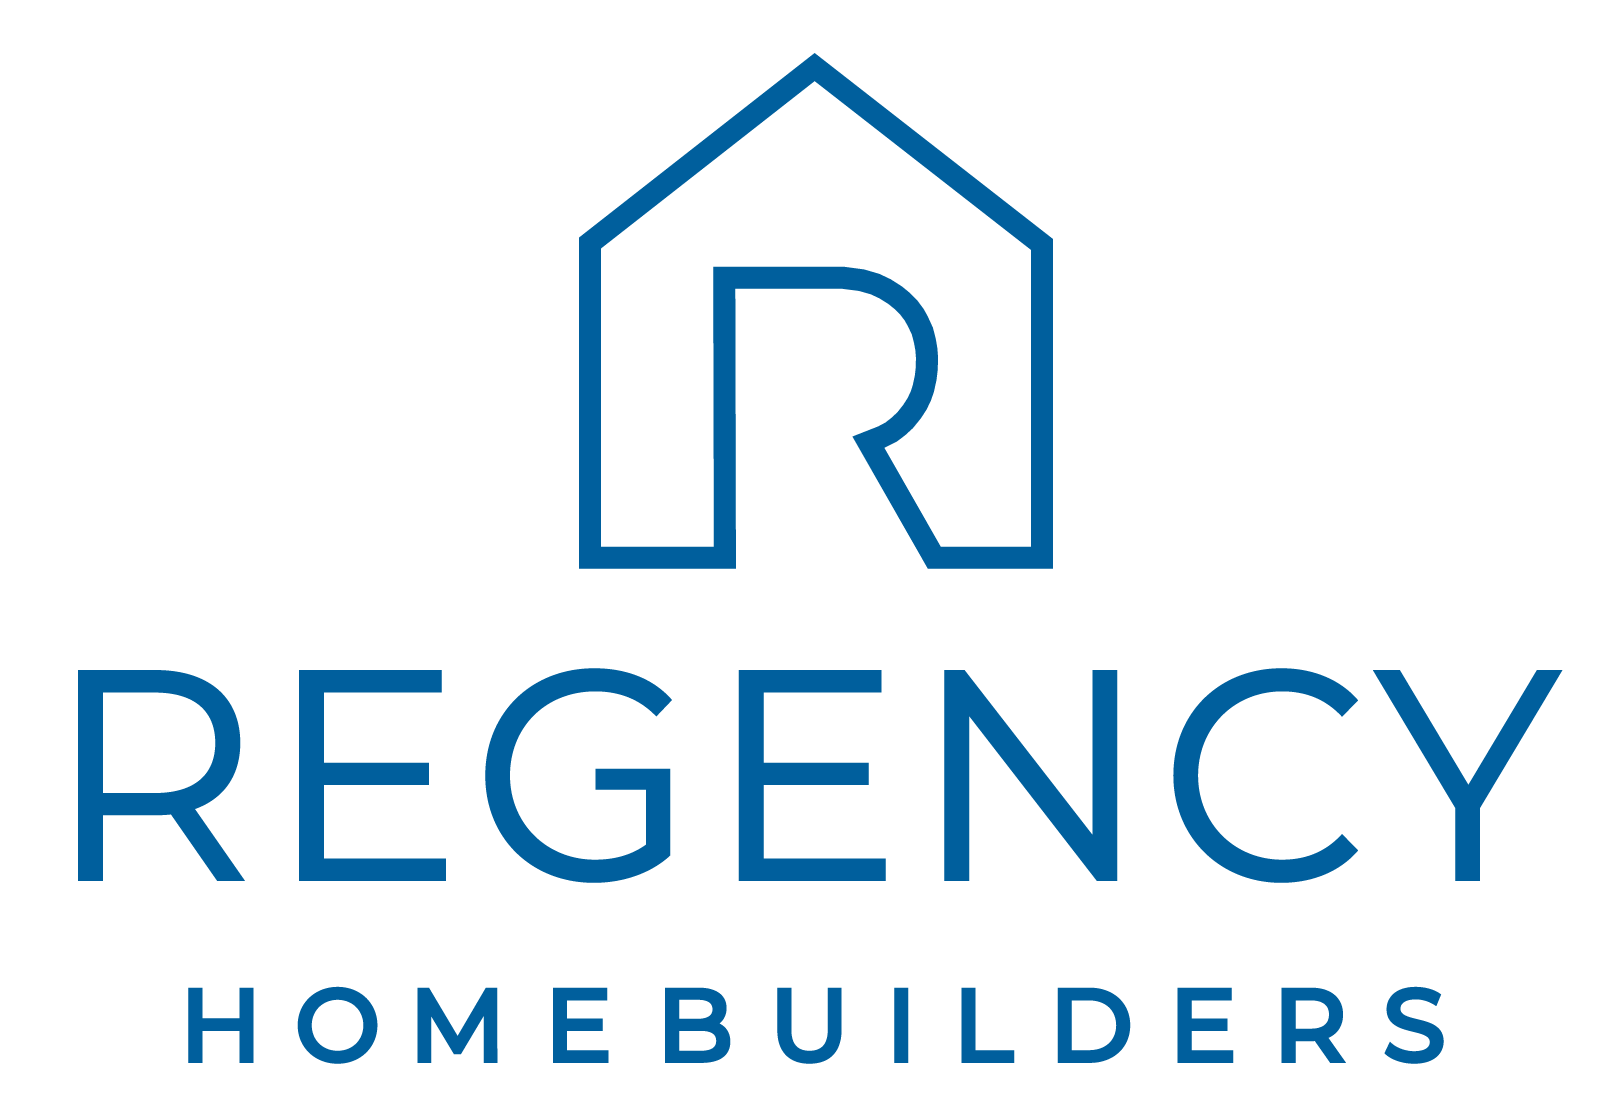 Regency Homebuilders logo